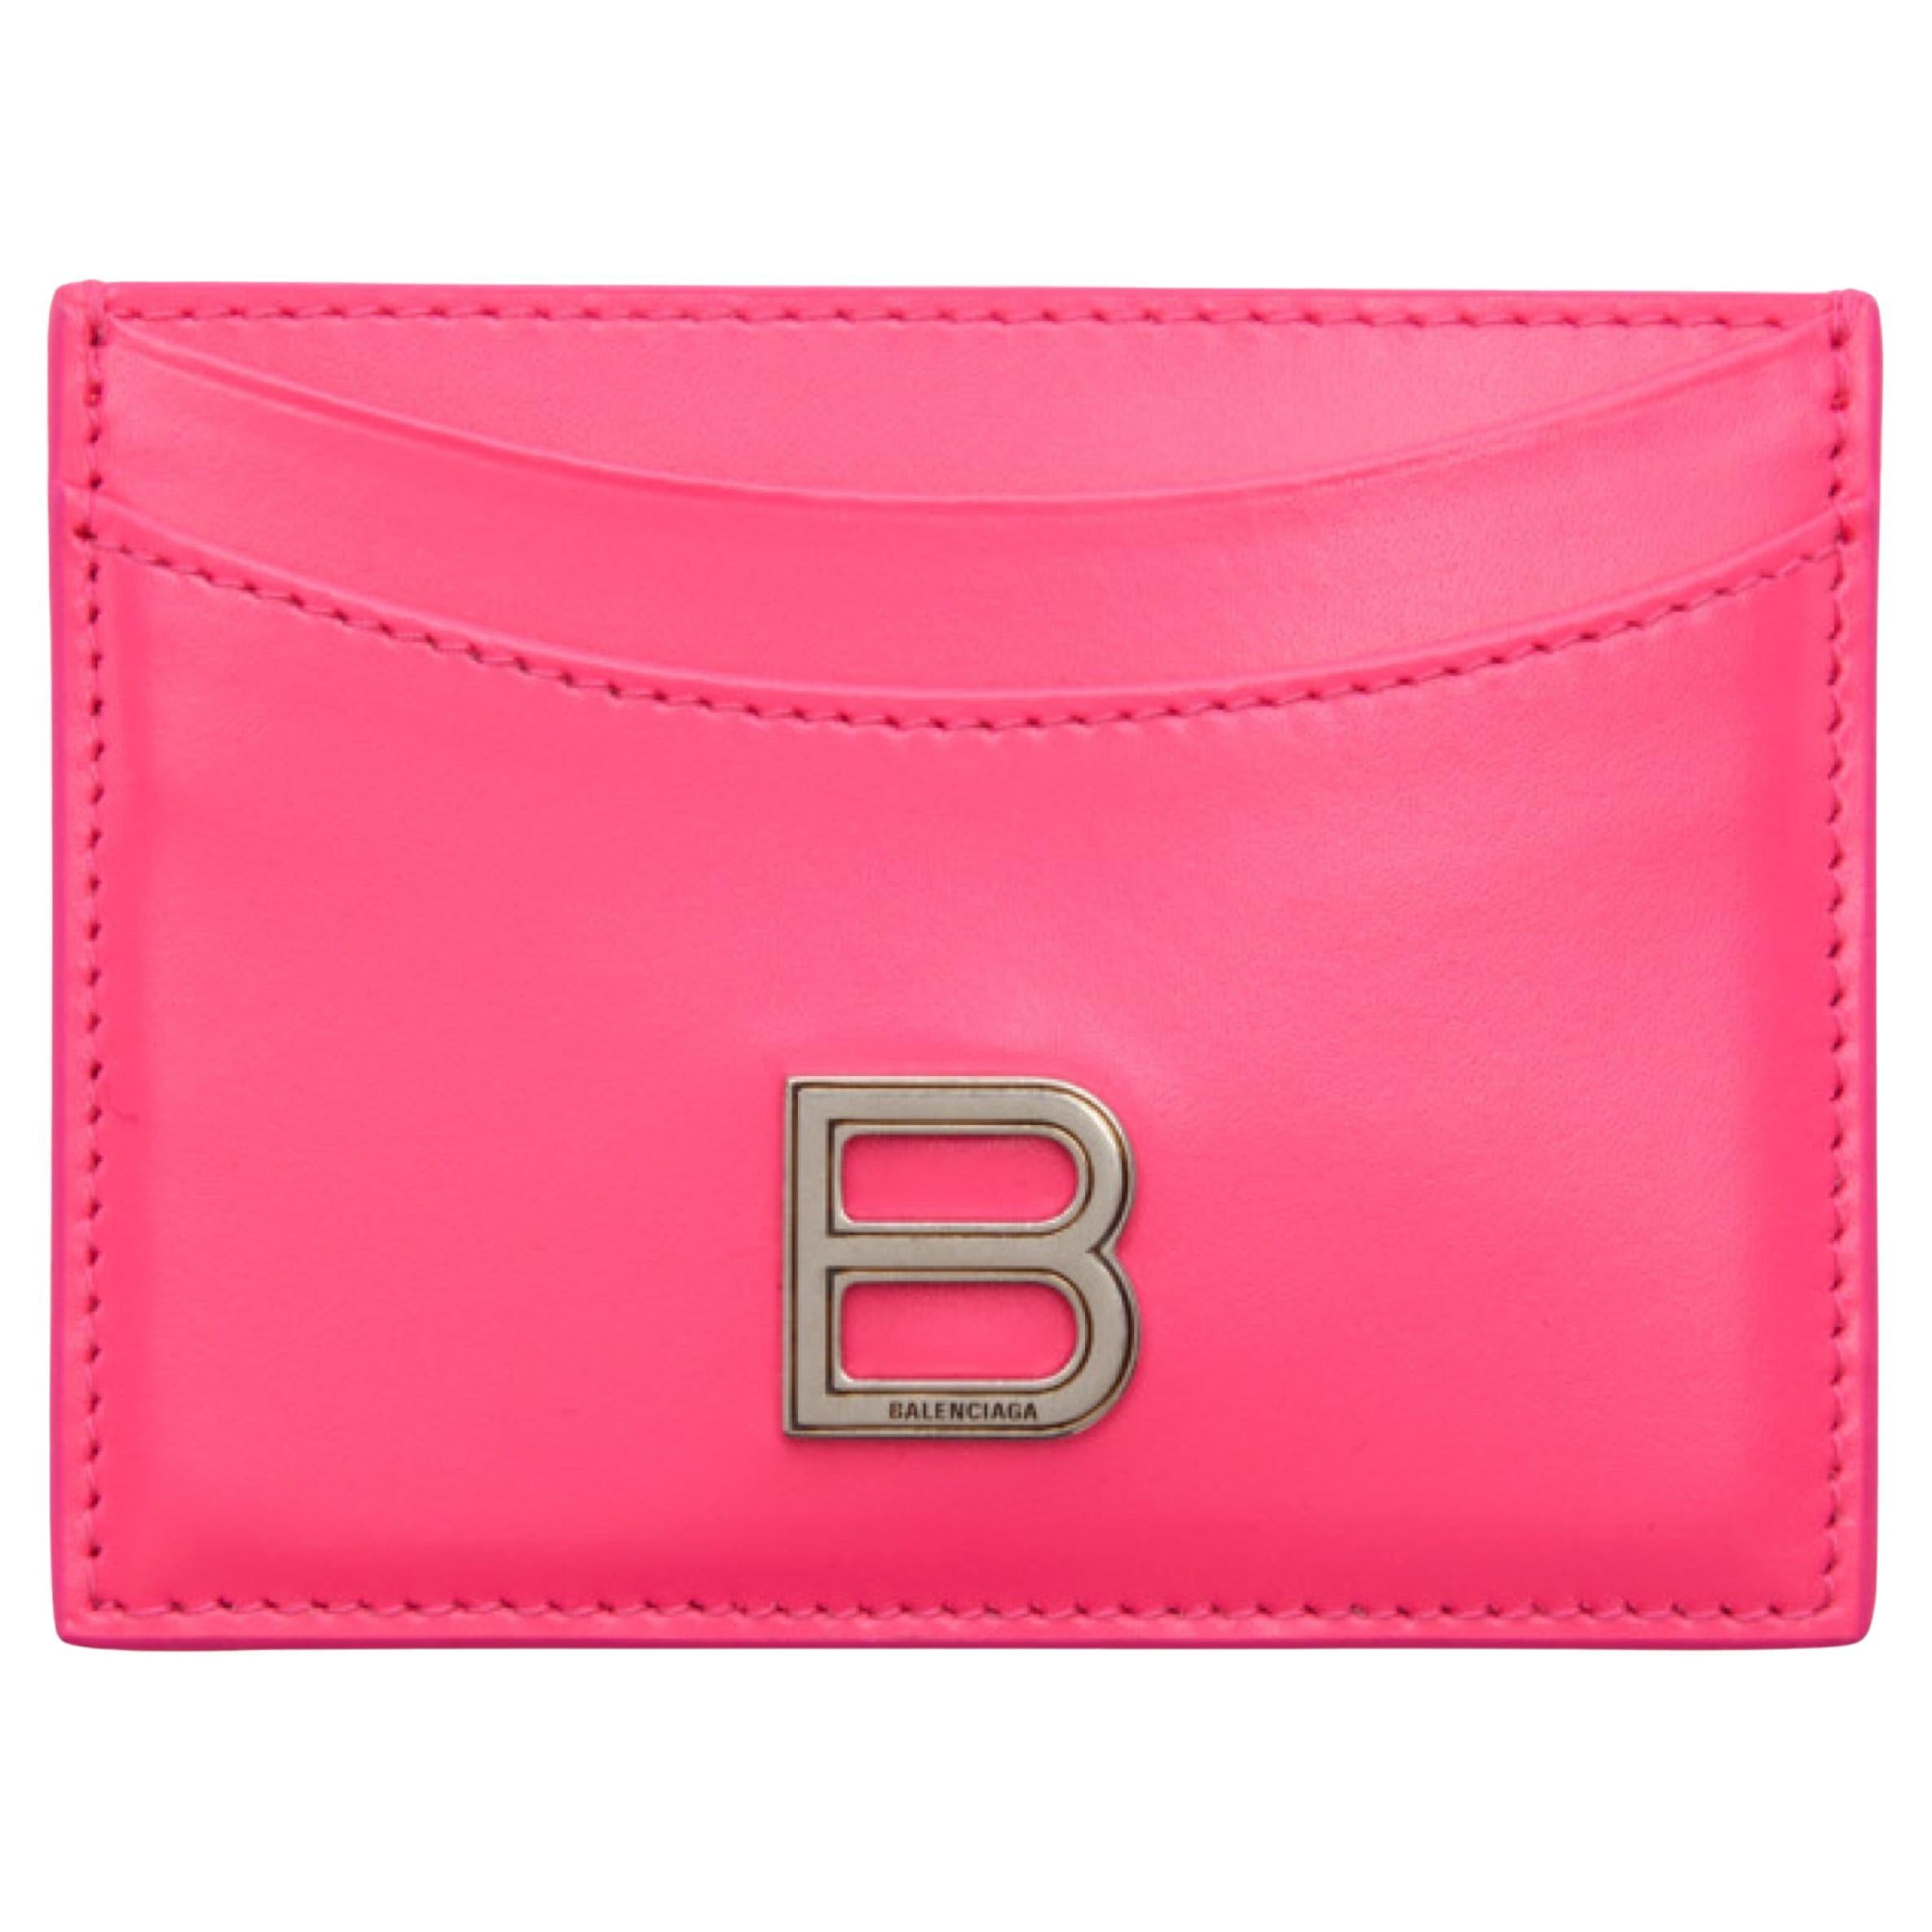 Balenciaga Pink Hourglass Bag - 3 For Sale on 1stDibs